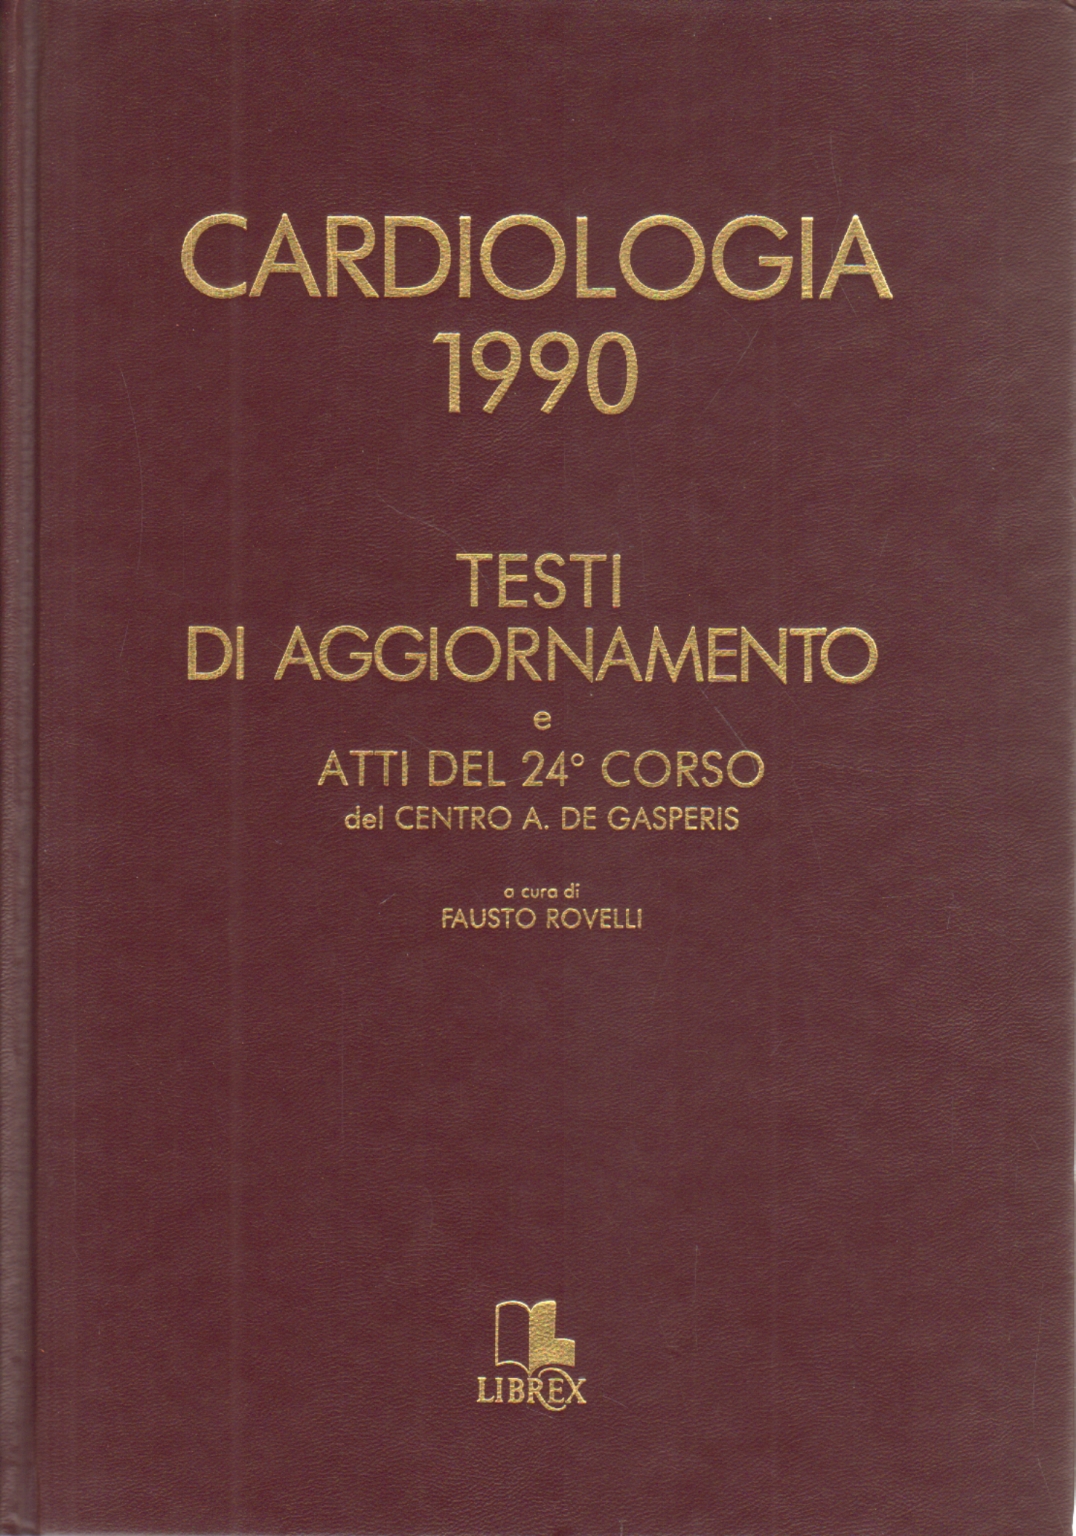 Cardiologia 1990, Fausto Rovelli